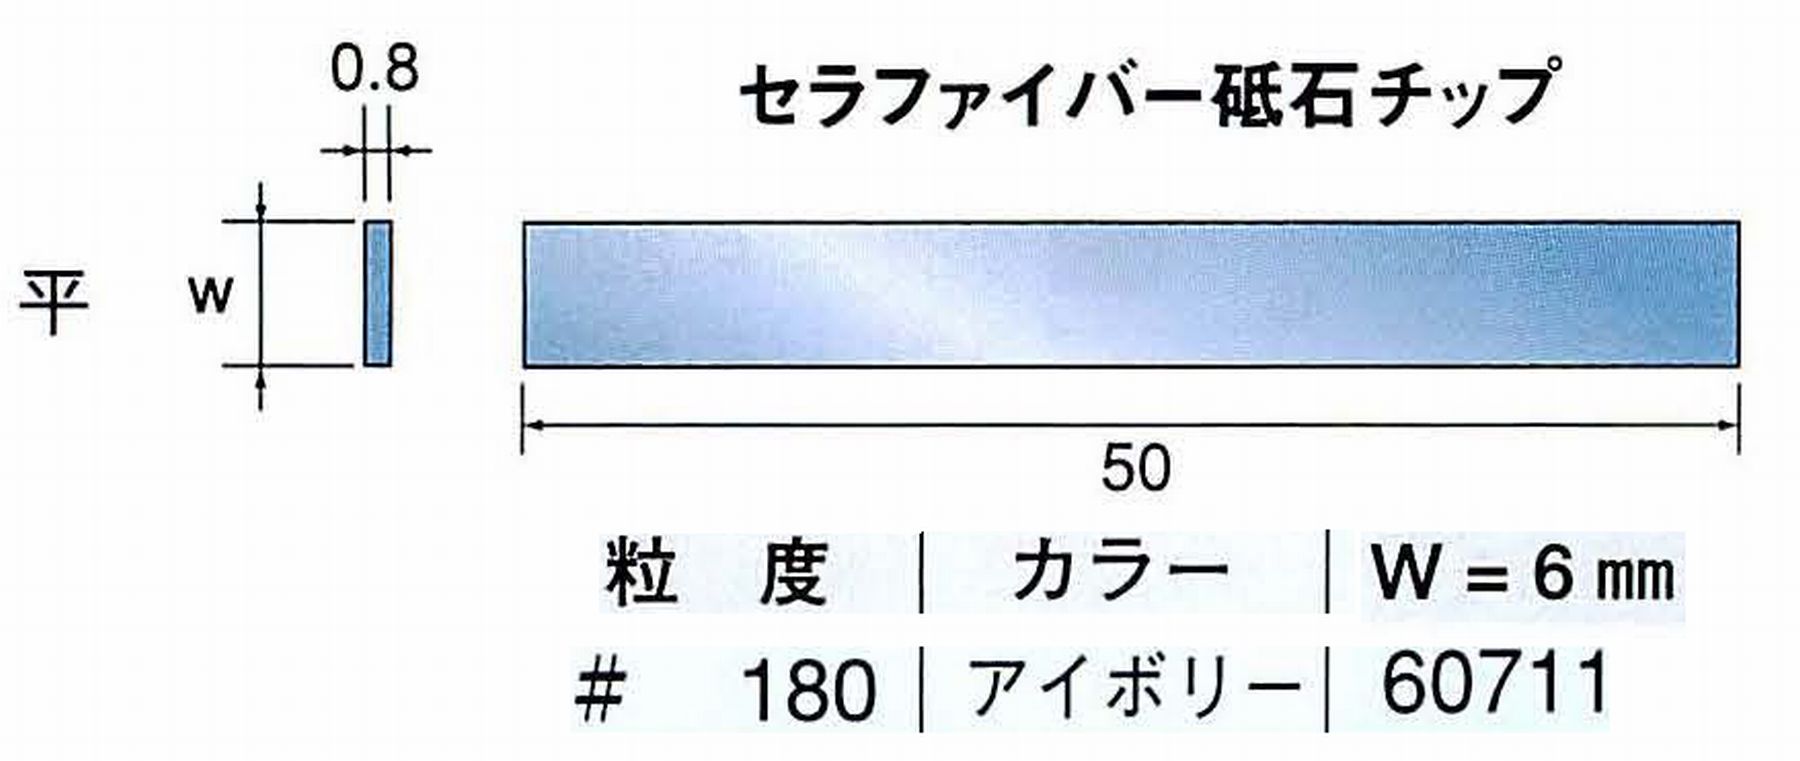 ナカニシ/NAKANISHI 超音波研磨装置 シーナスneo/シーナス専用工具 セラファイバー砥石チップ 平 60711